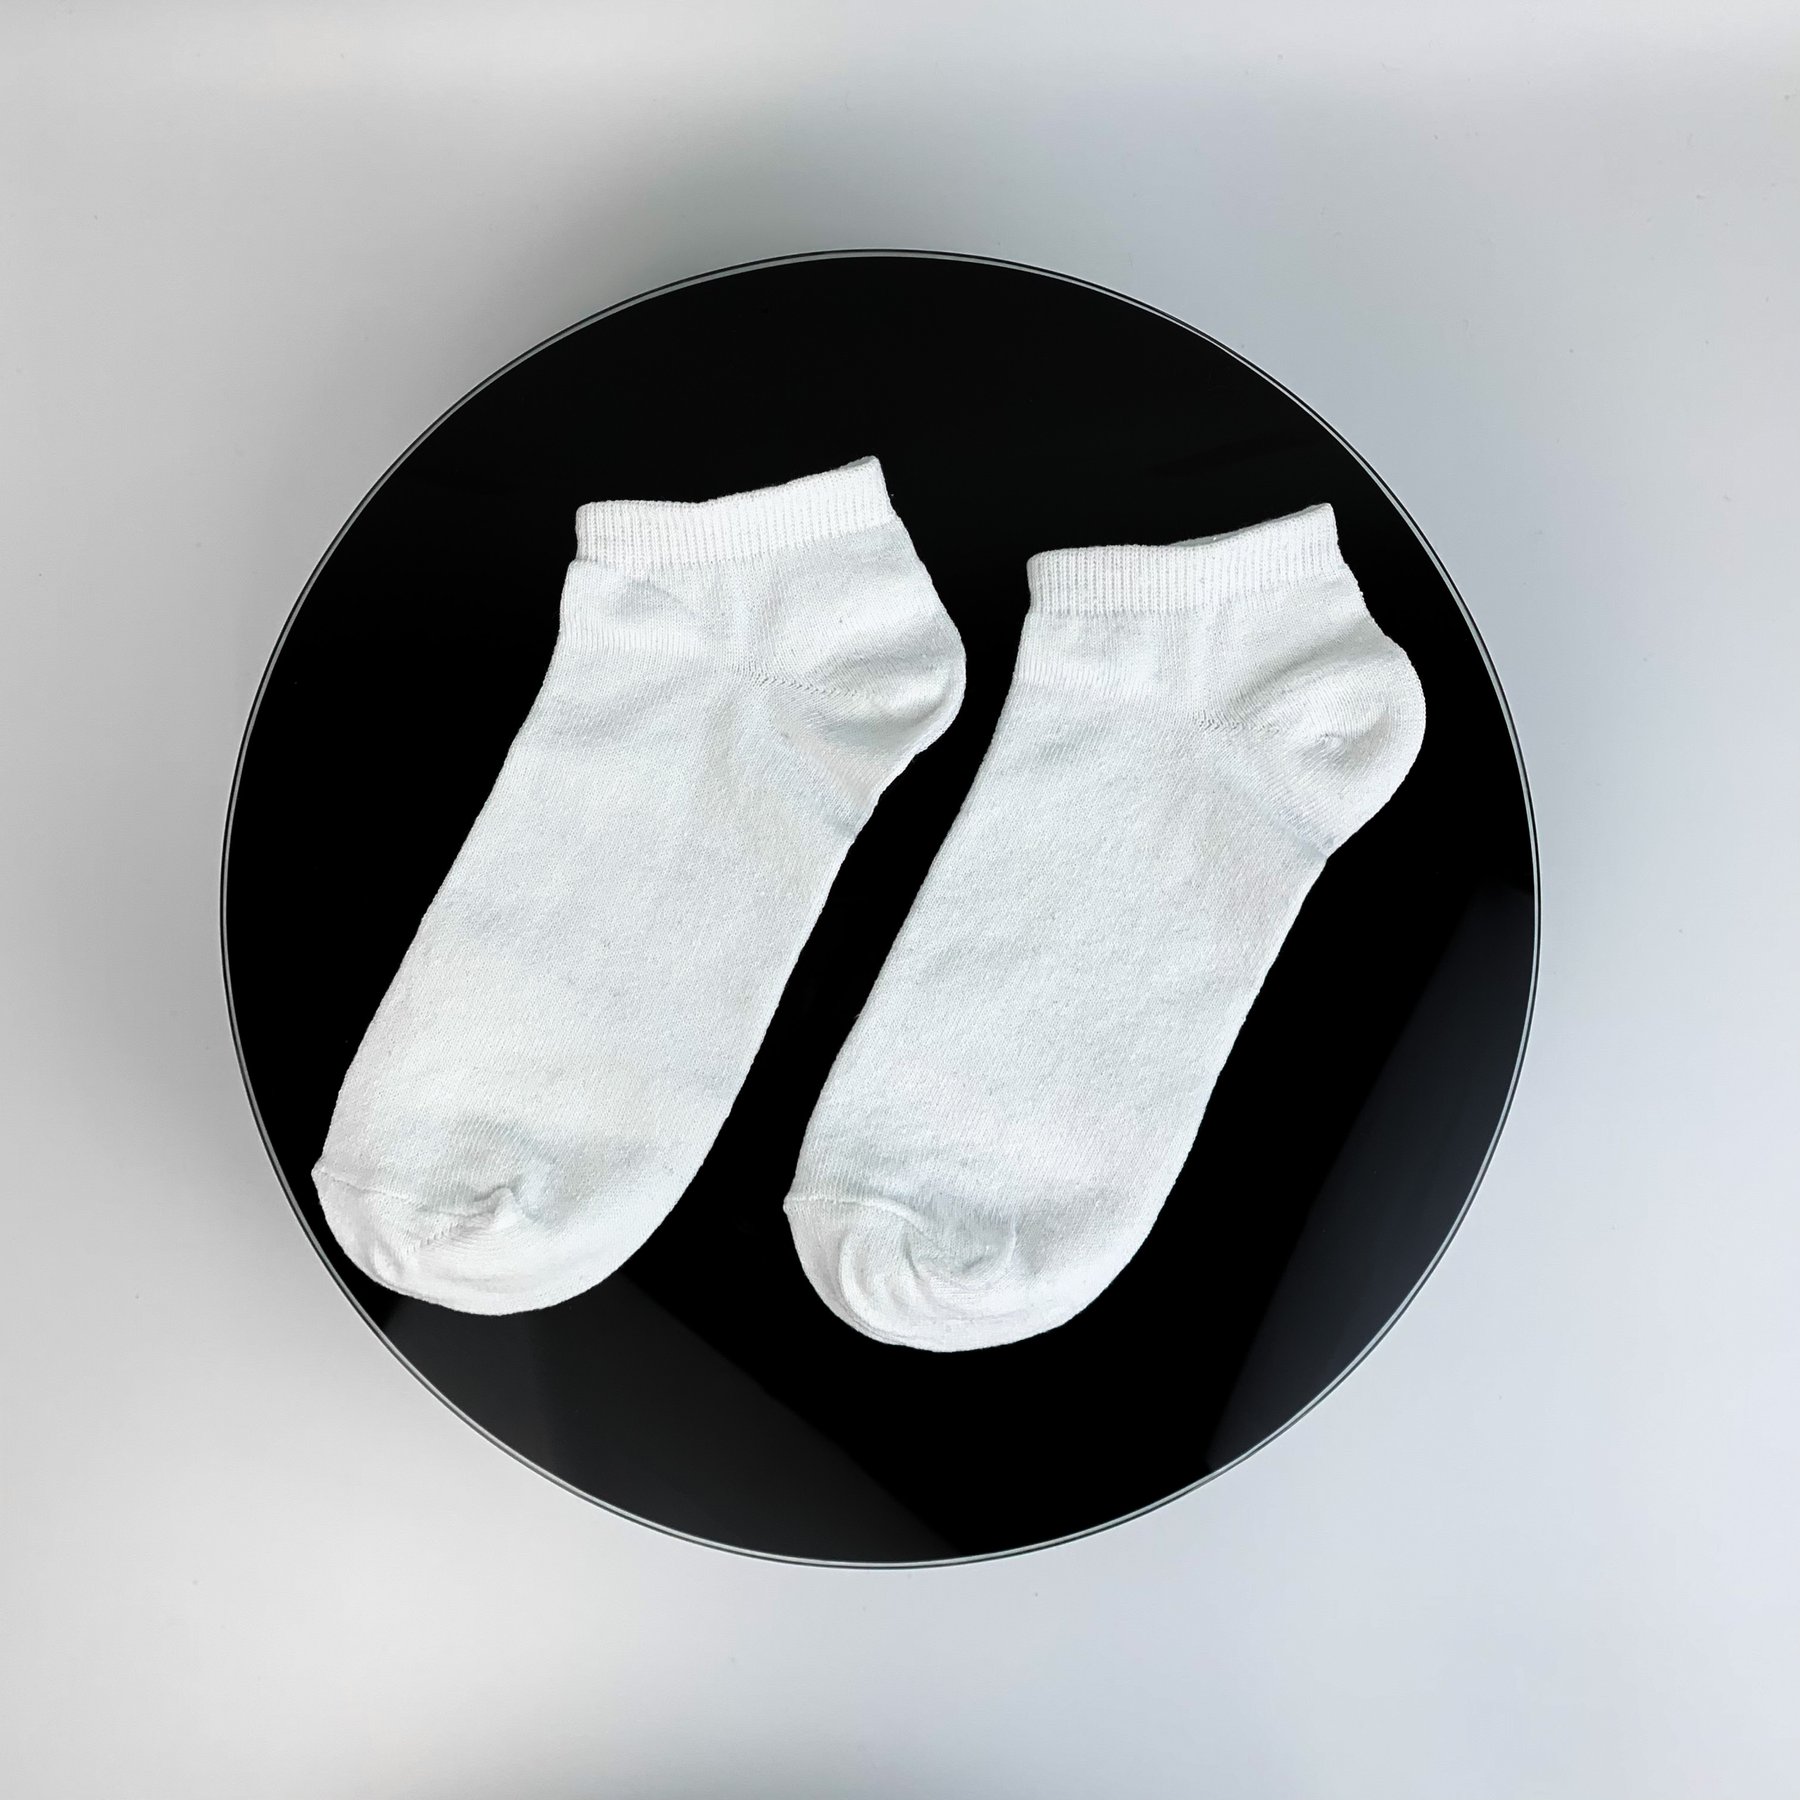 Короткі білі жіночі шкарпетки